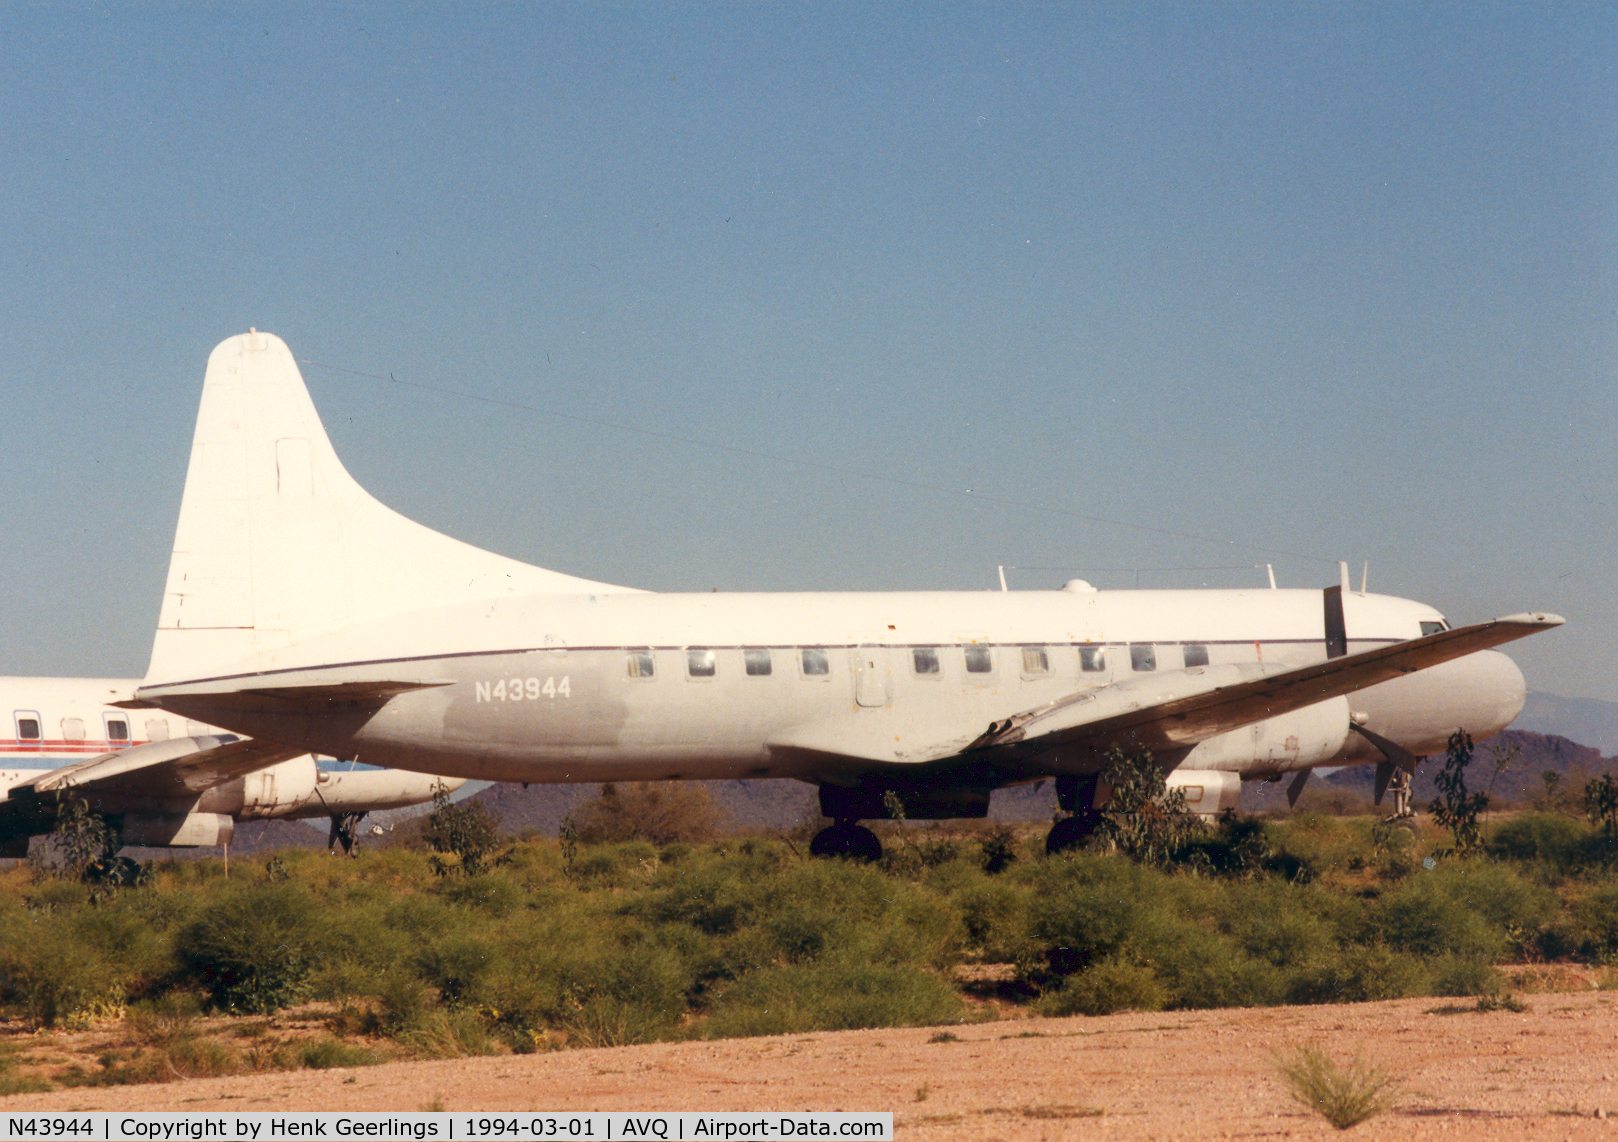 N43944, 1955 Convair C-131B Samaritan C/N 254, Avra Valley